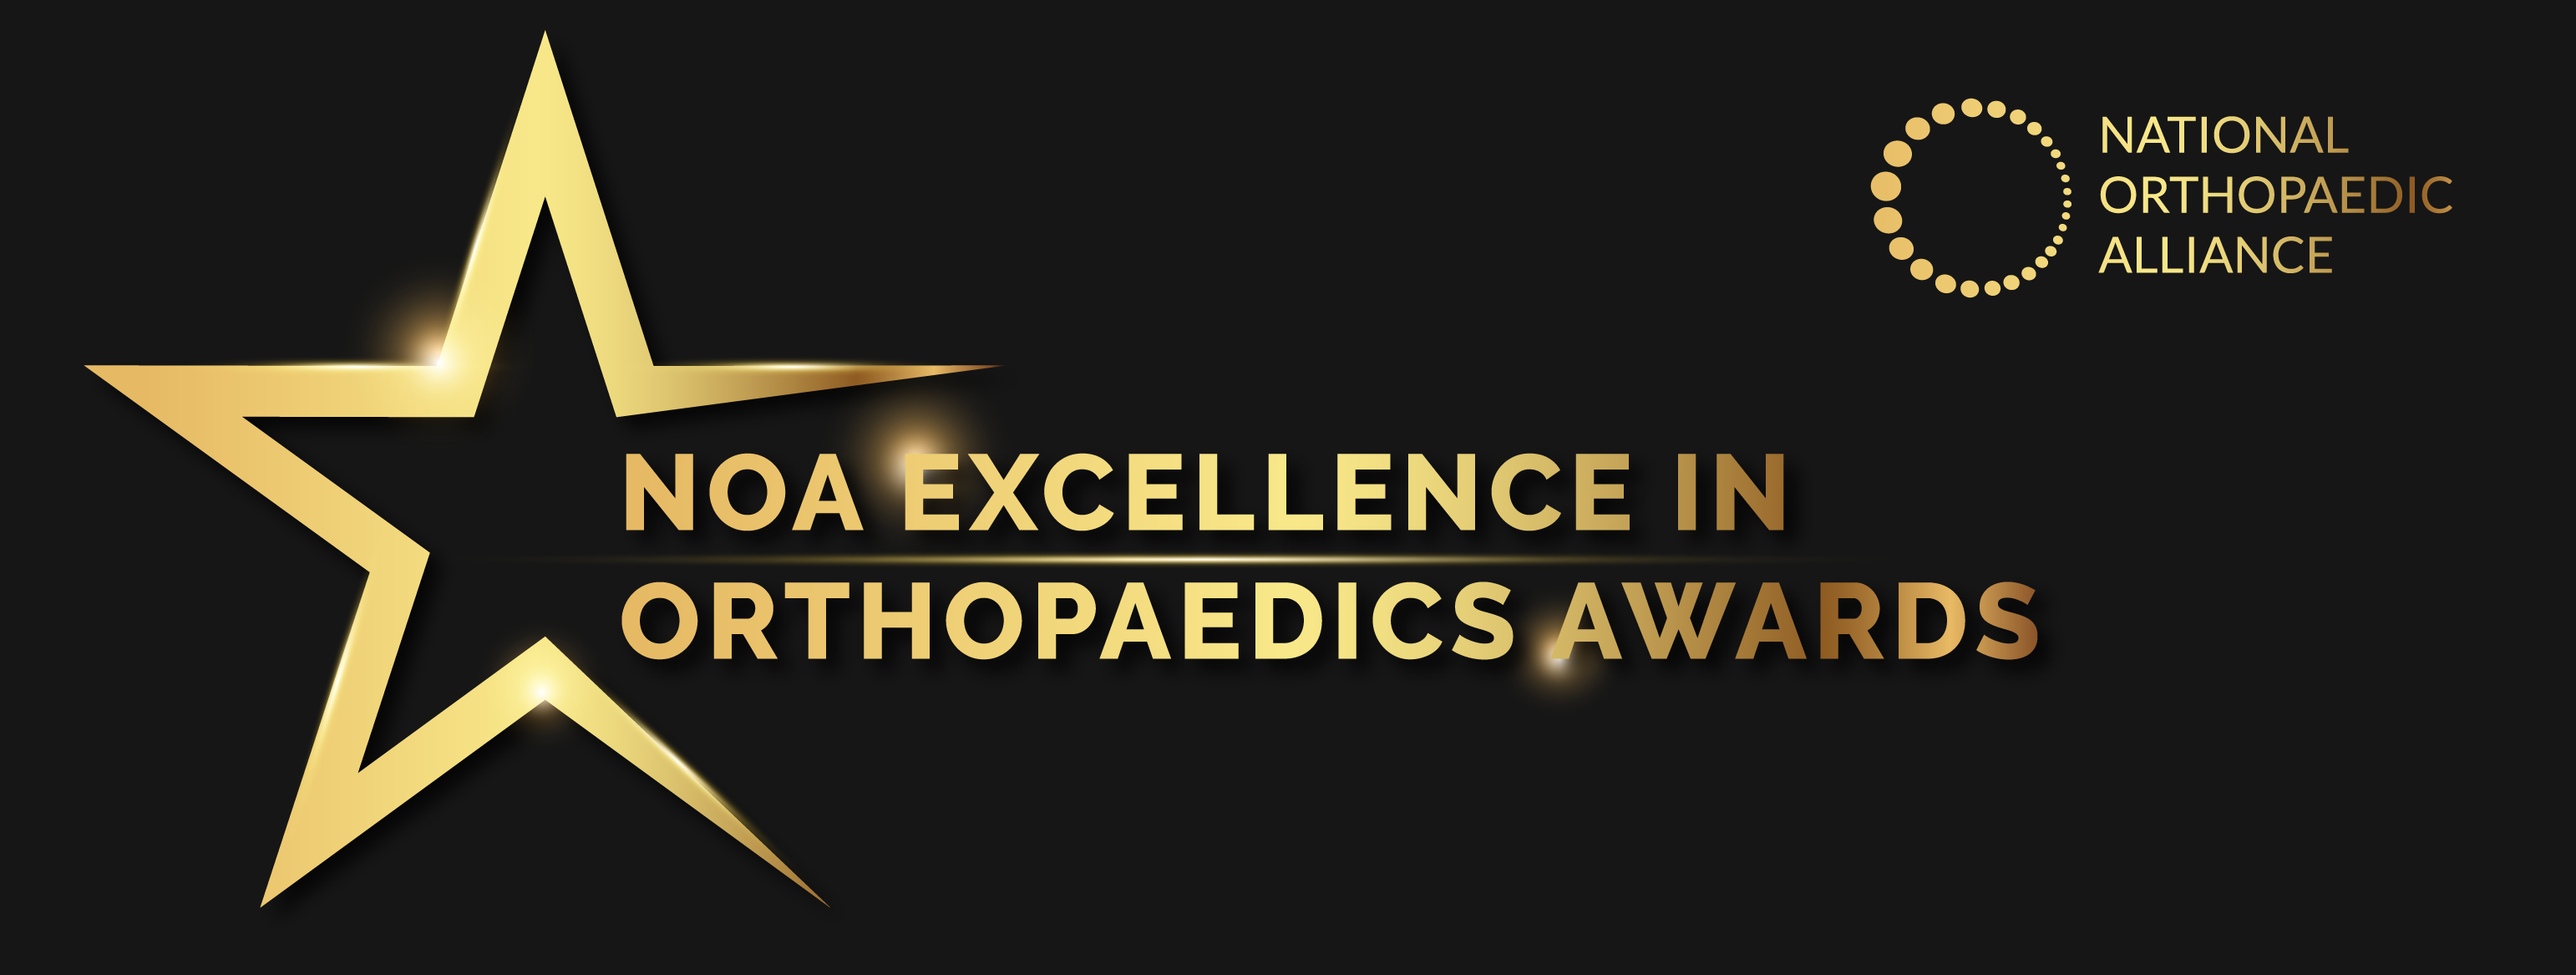 NOA Excellence awards